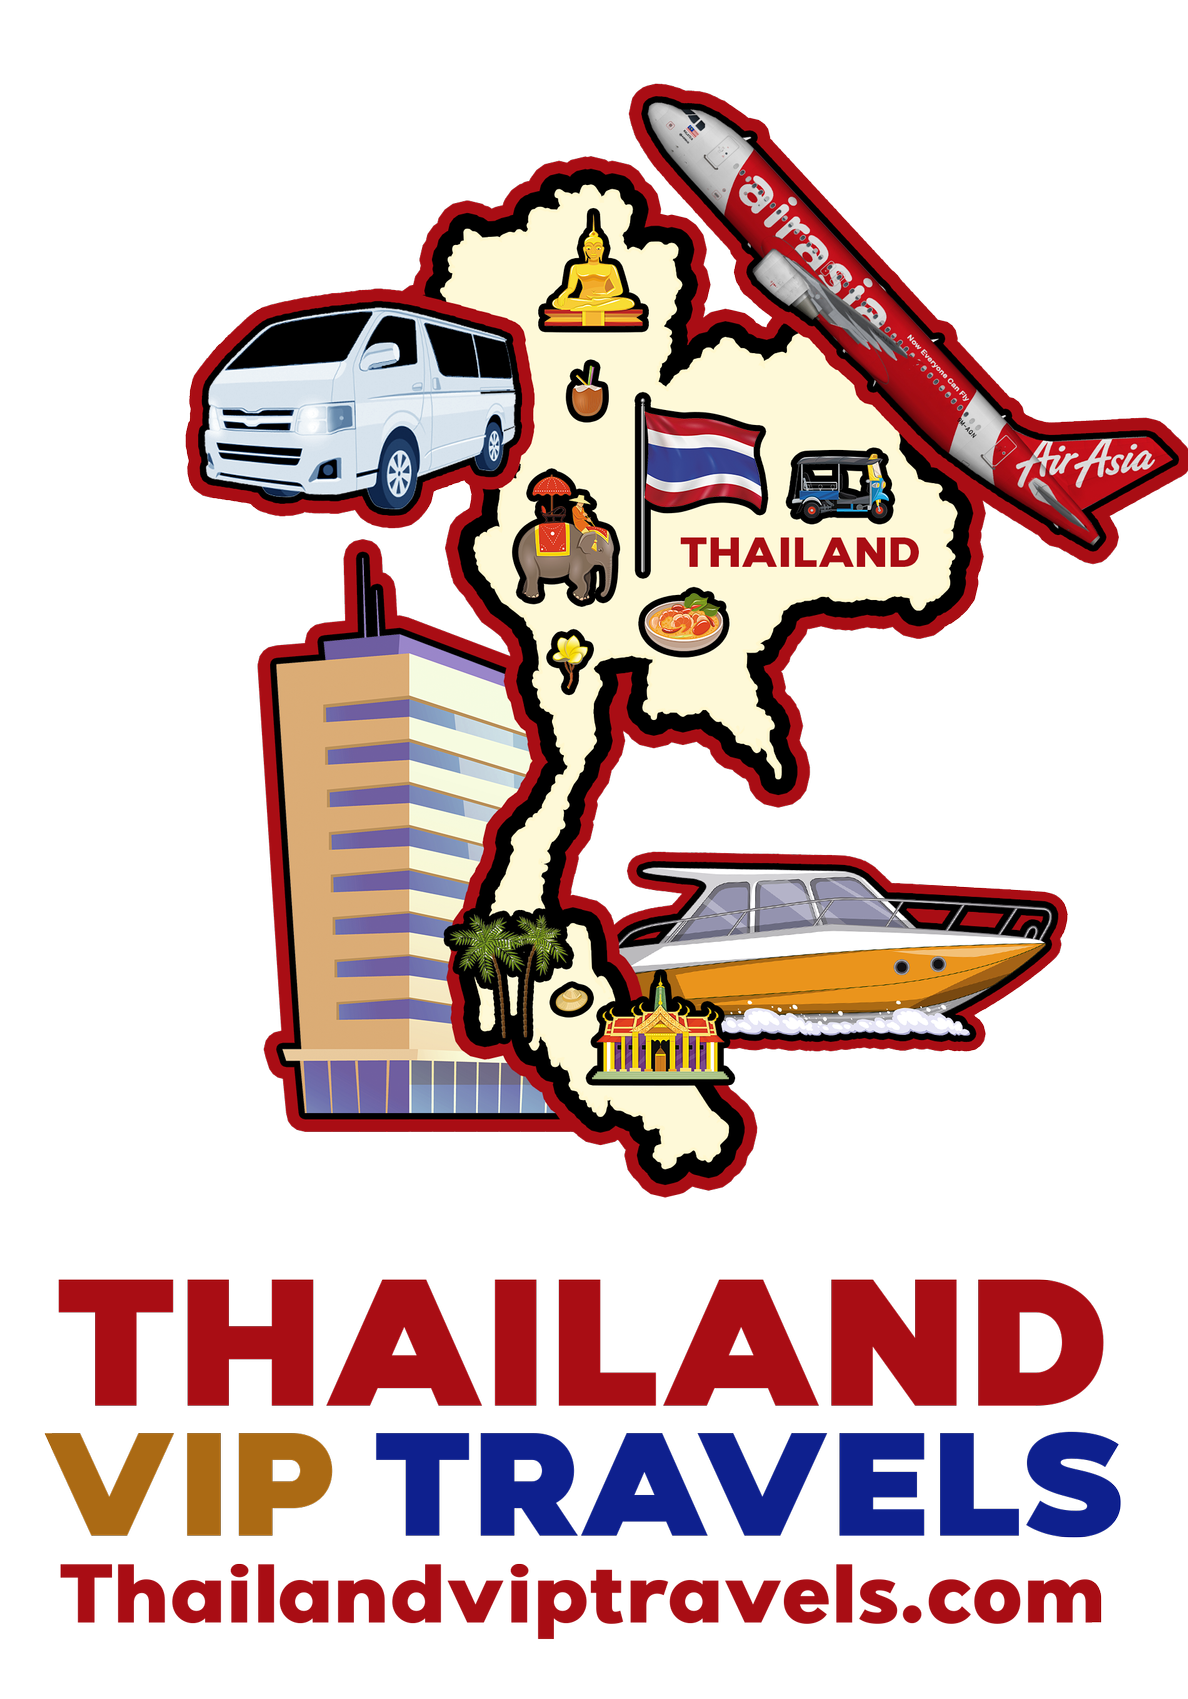 Best Thailand Tour & Affiliate Company